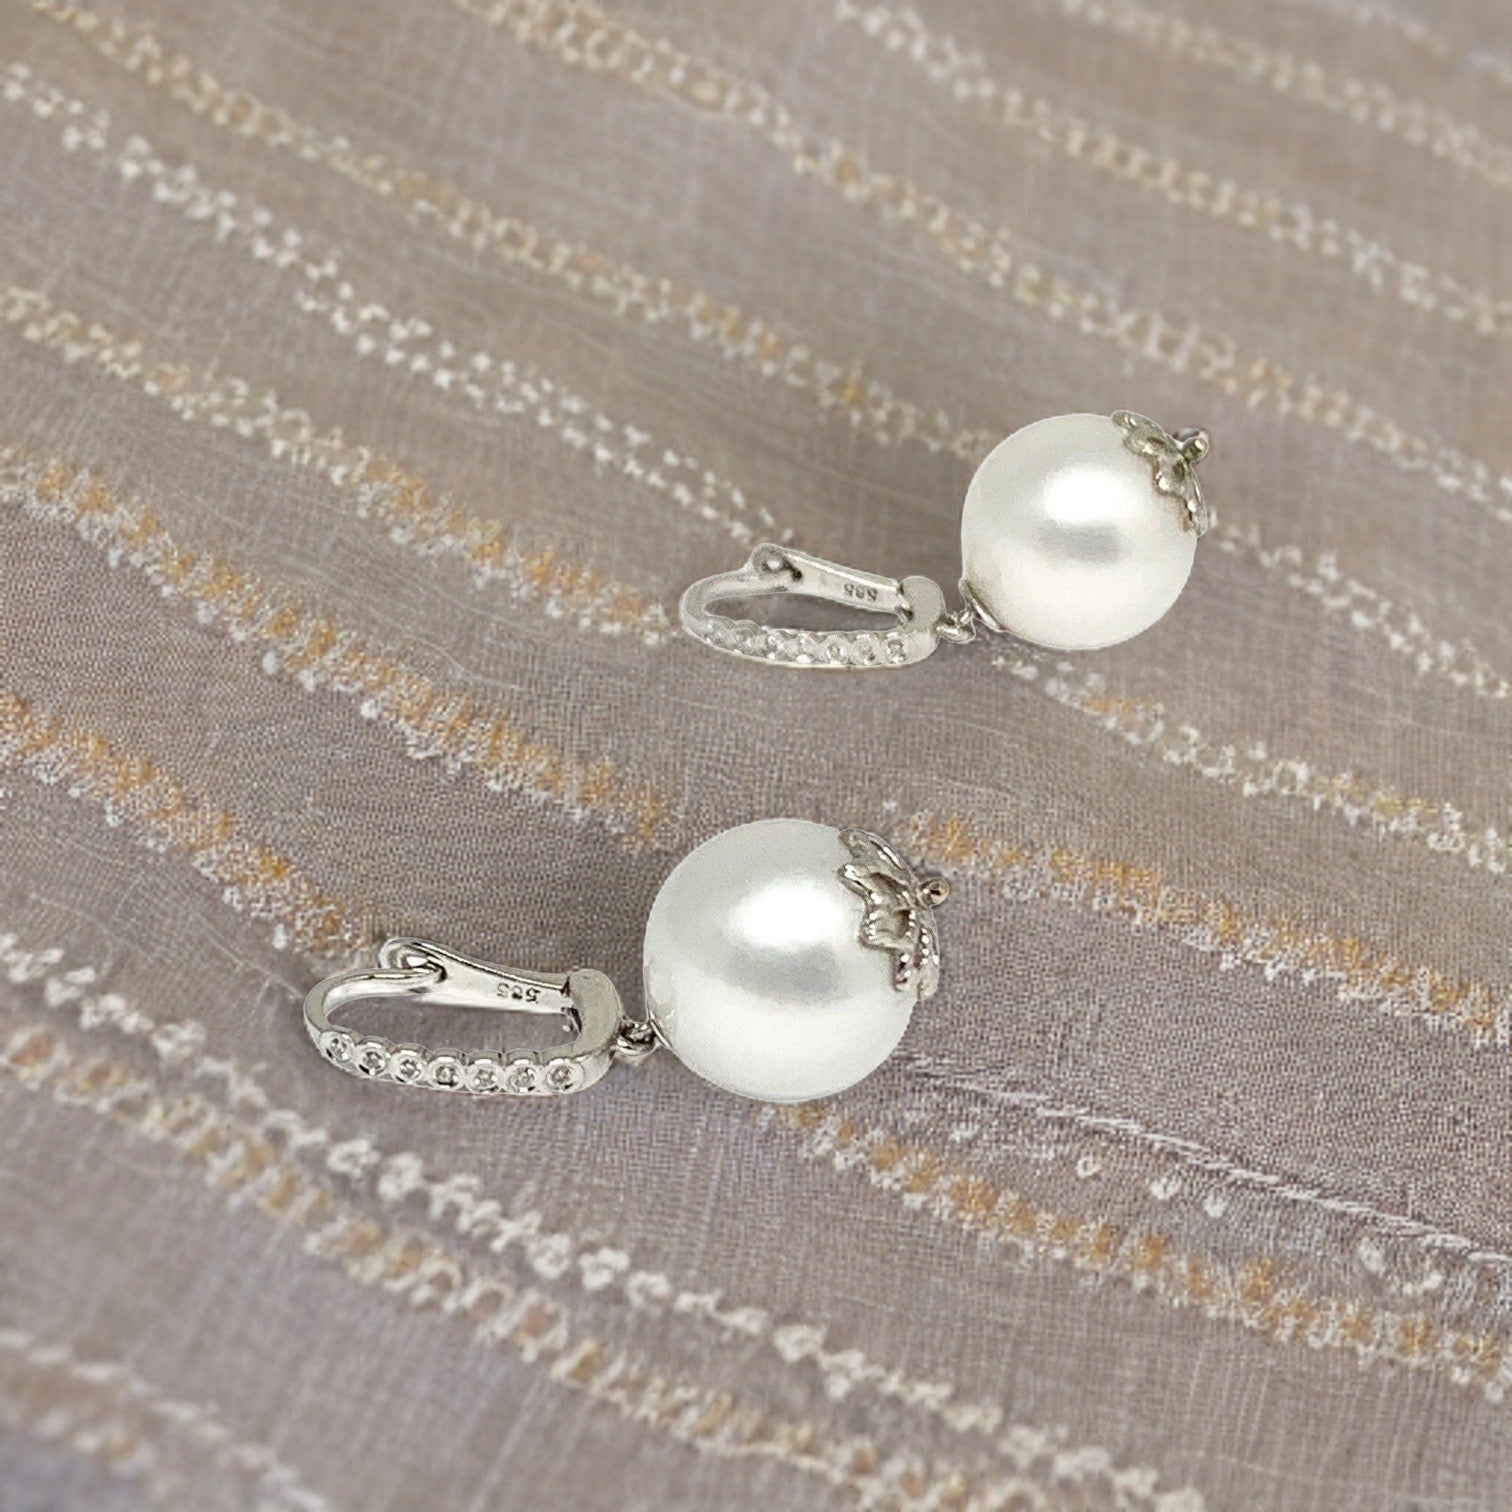 Diamond Large South Sea Pearl Earrings 14k Gold 13 mm Certified $4,950 915306 - Certified Fine Jewelry